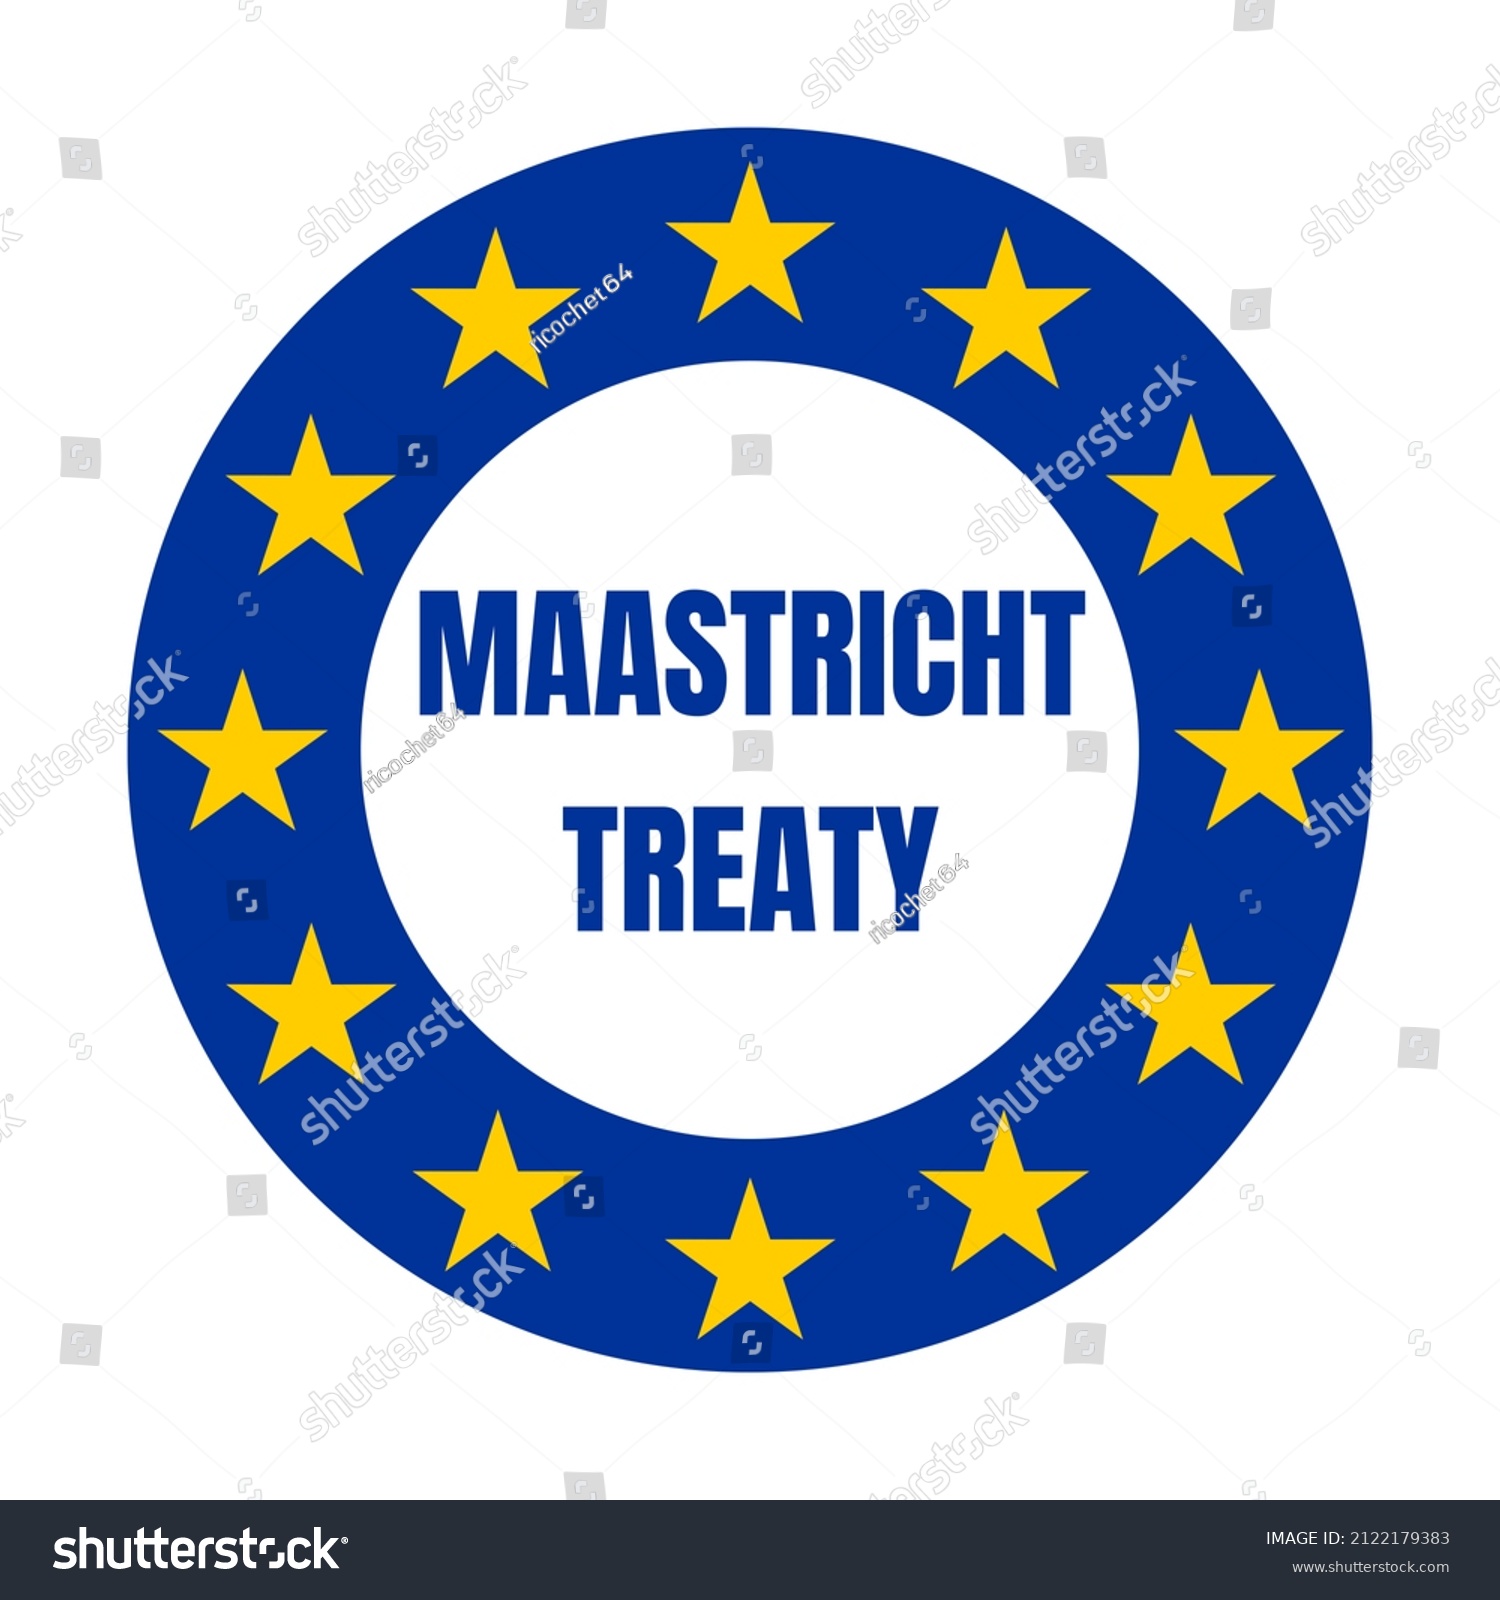 159 Maastricht Treaty Images, Stock Photos & Vectors | Shutterstock